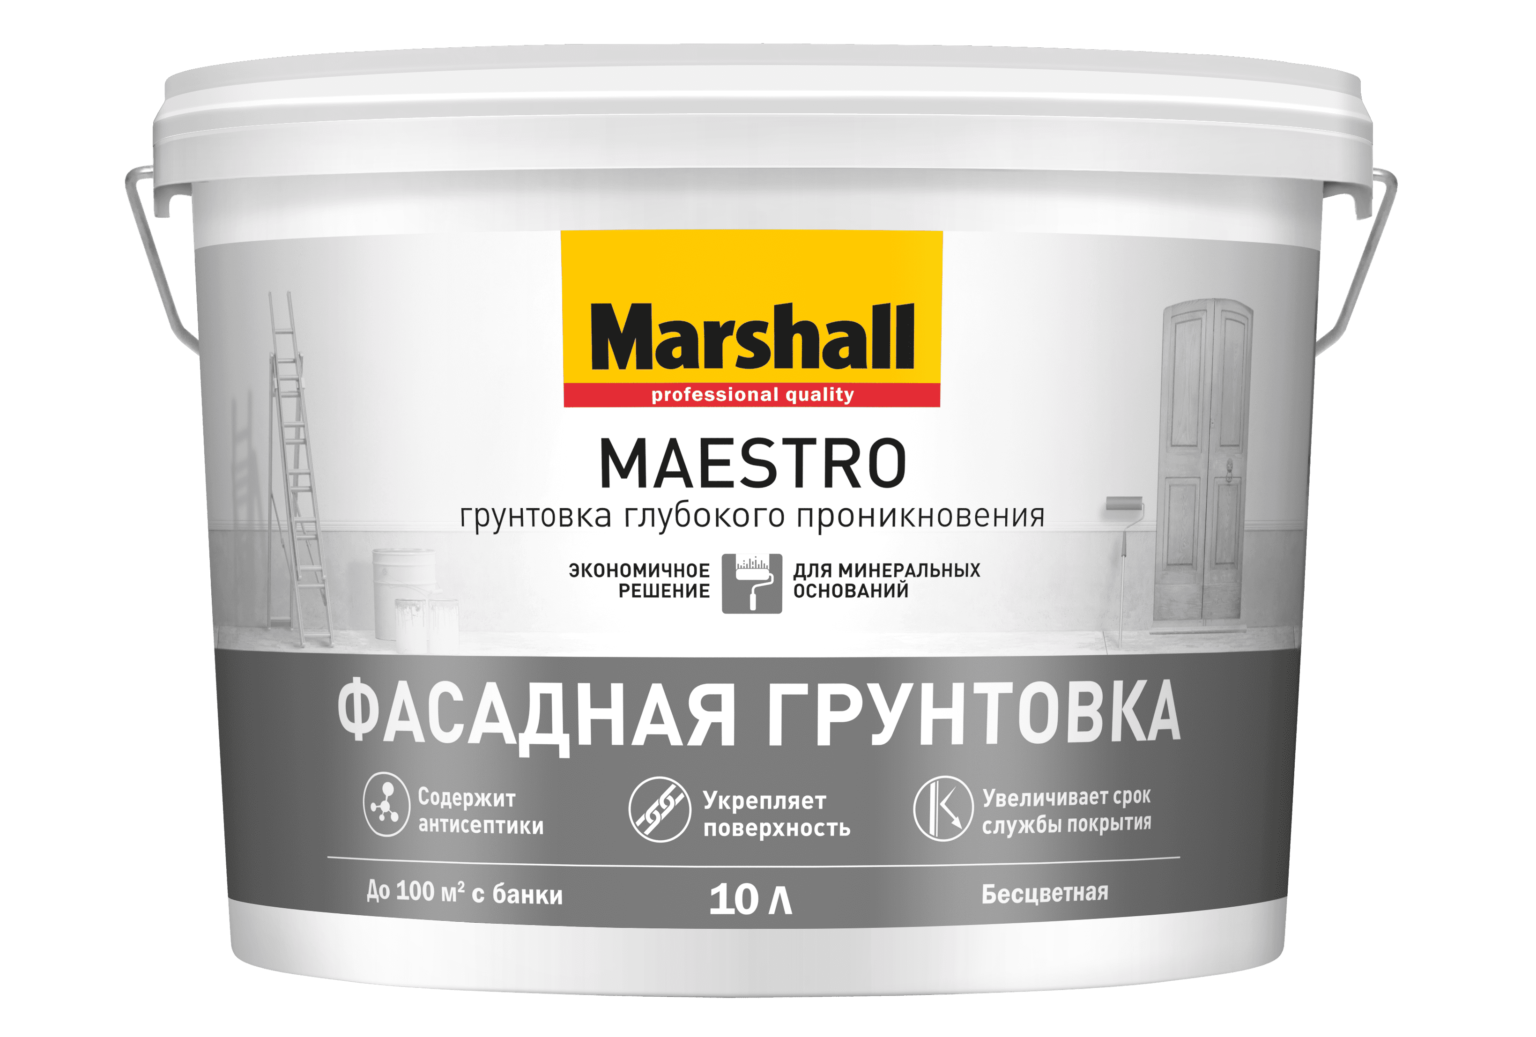 «Marshall Maestro фасадная грунтовка»